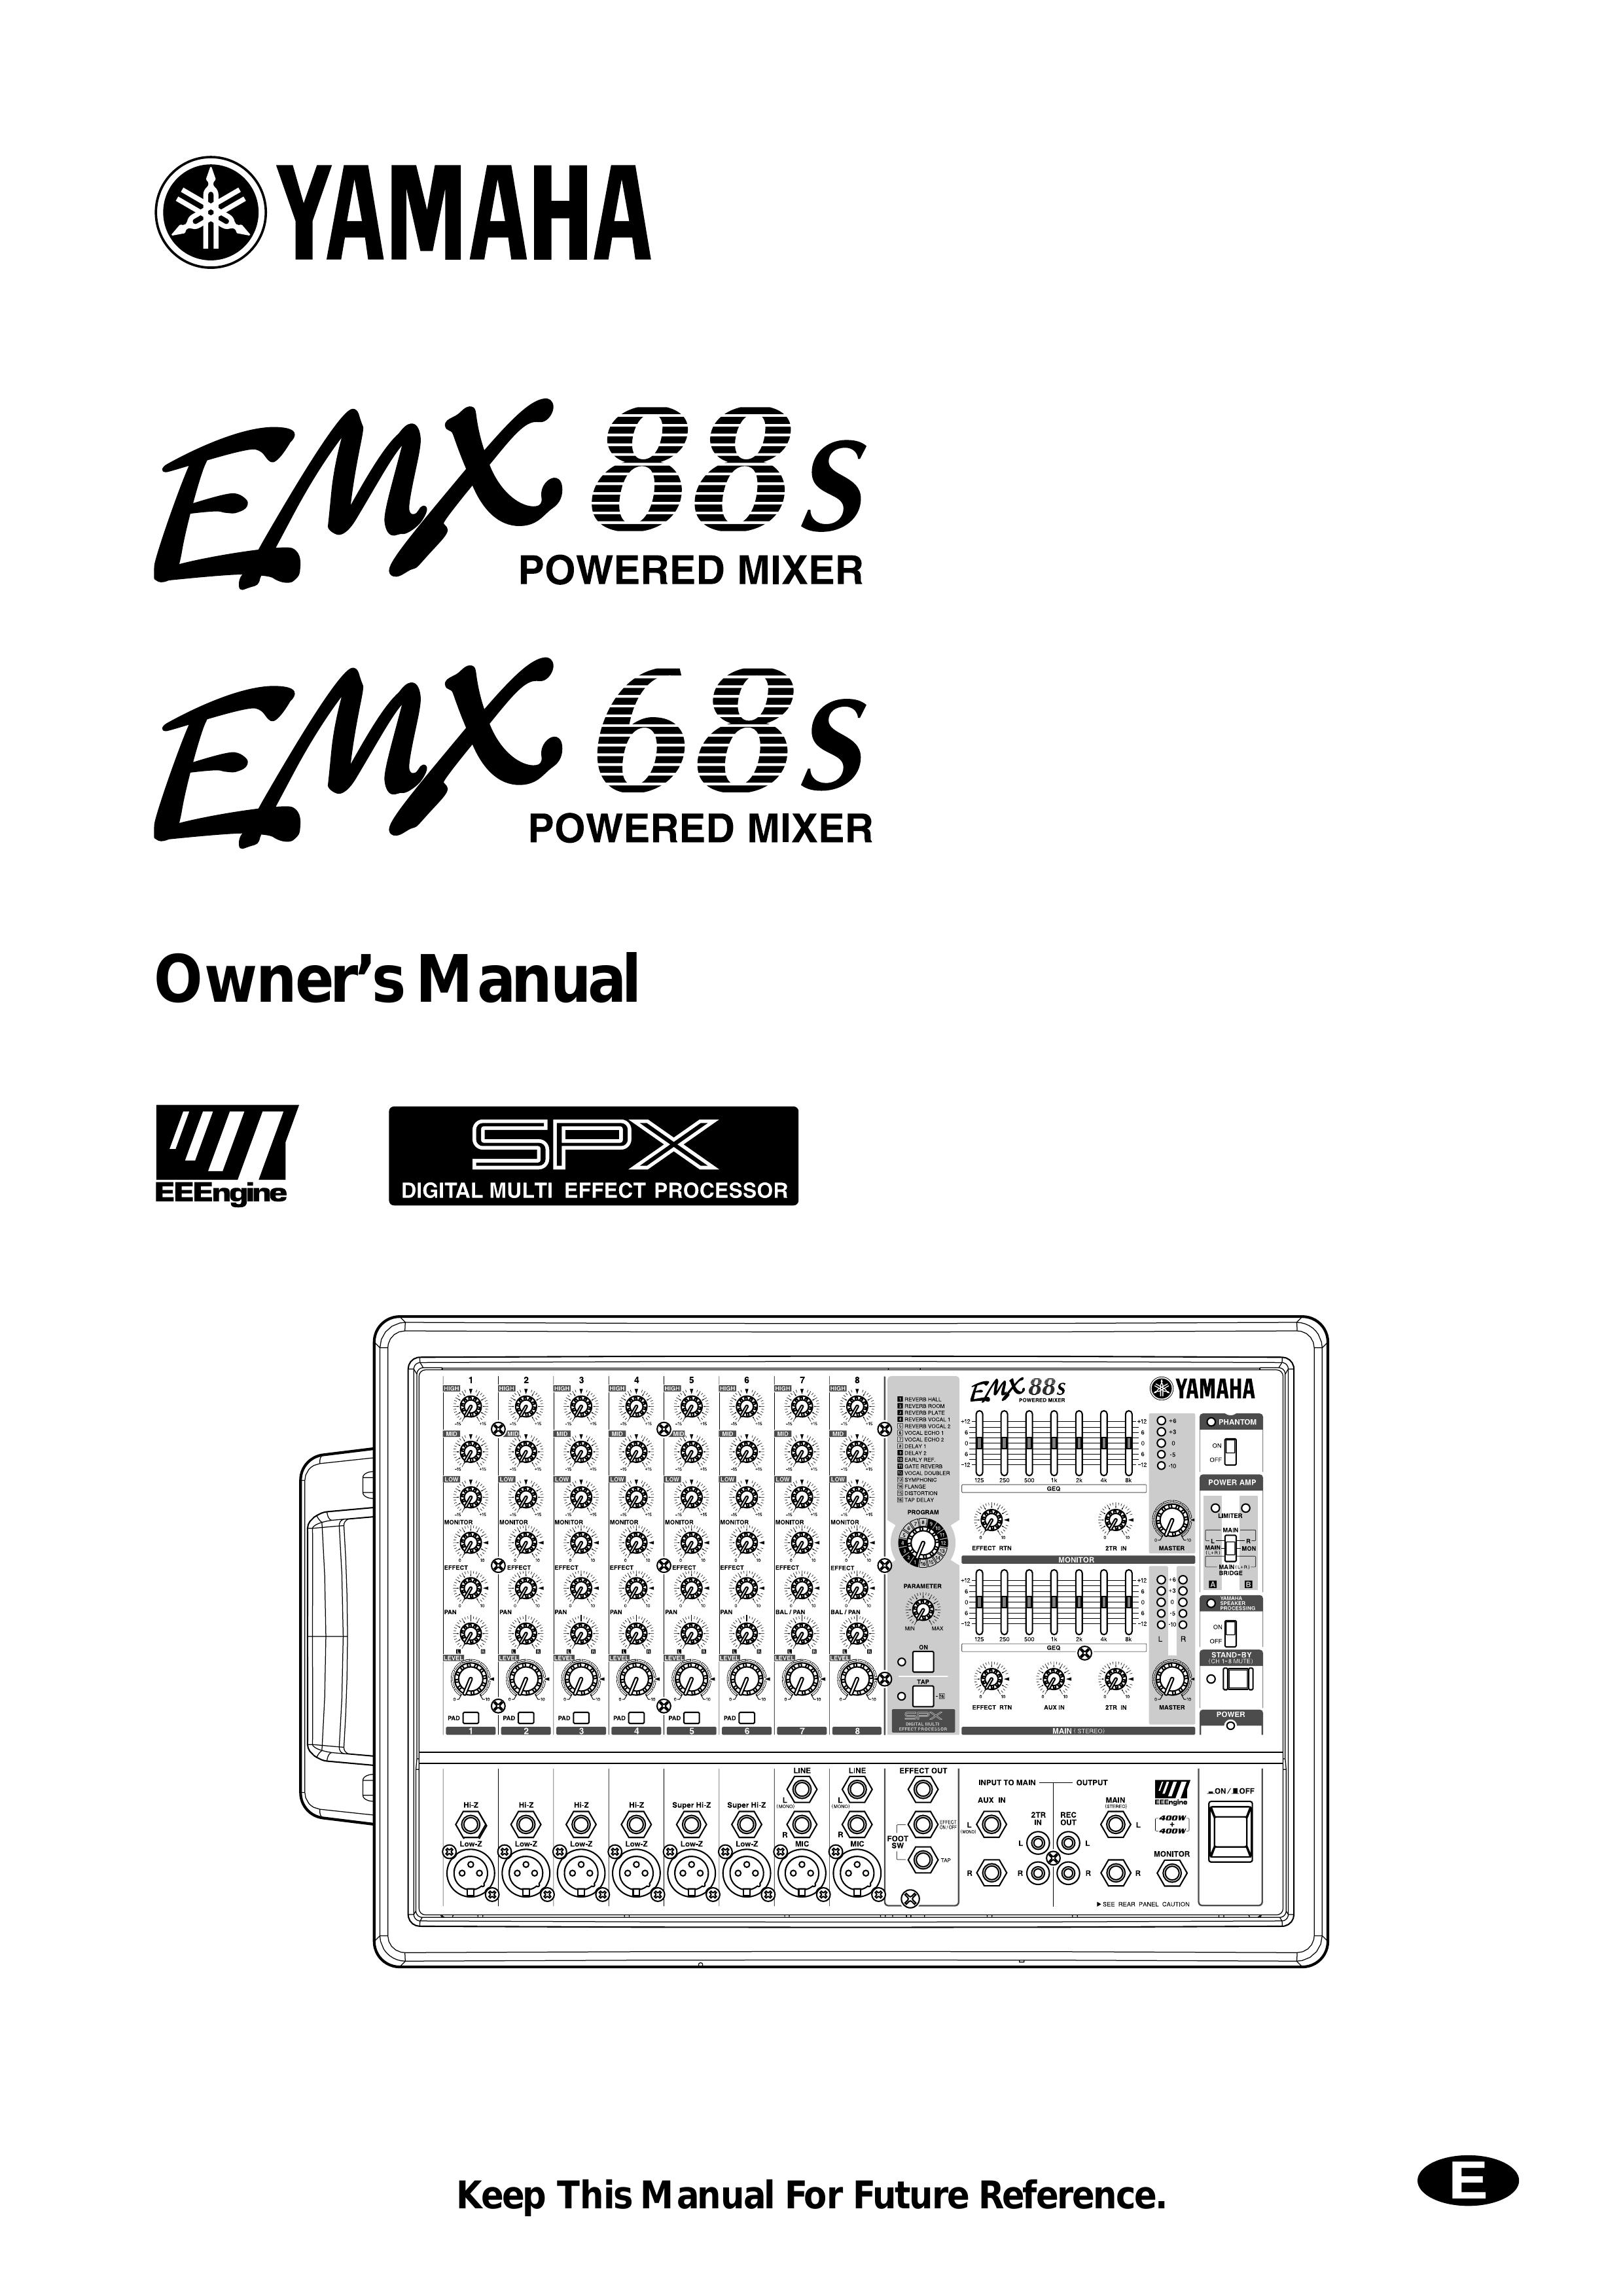 Yamaha EMX88s Music Mixer User Manual